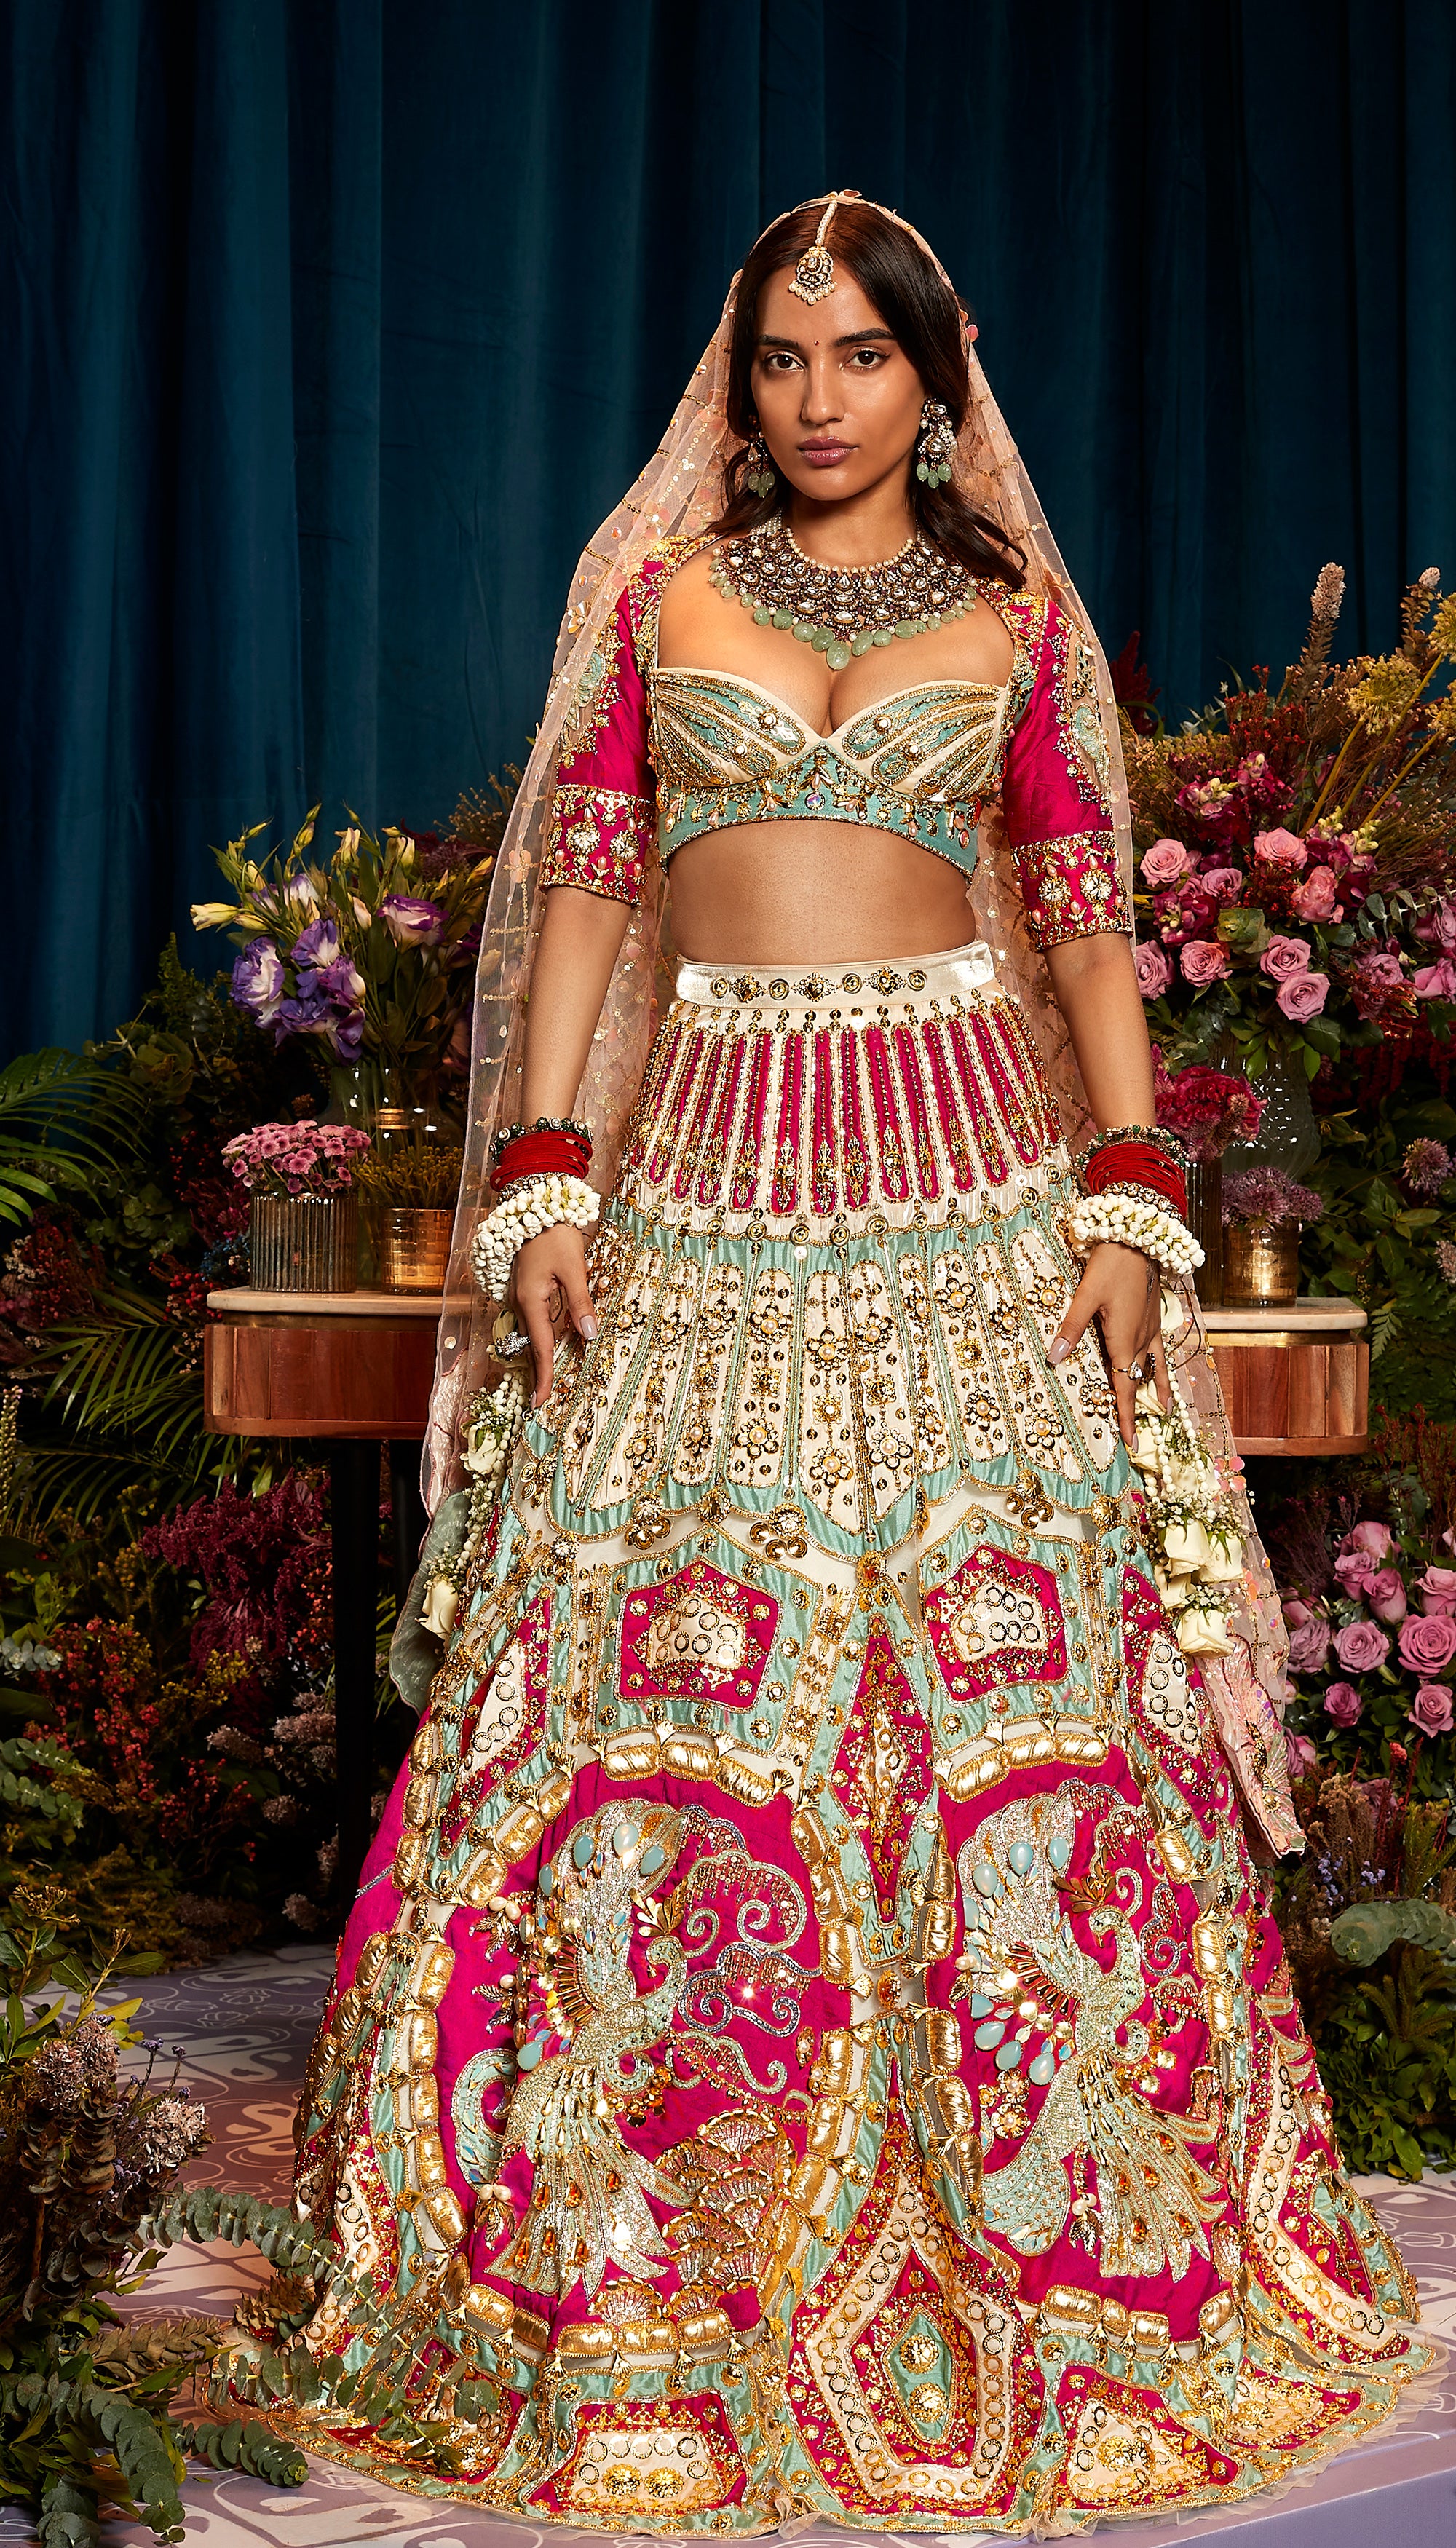 Best 30 Designer Indian Bridal Lehengas Designs of 2016 - Zikimo.com -  Original Indian Bridal Lehengas Collection